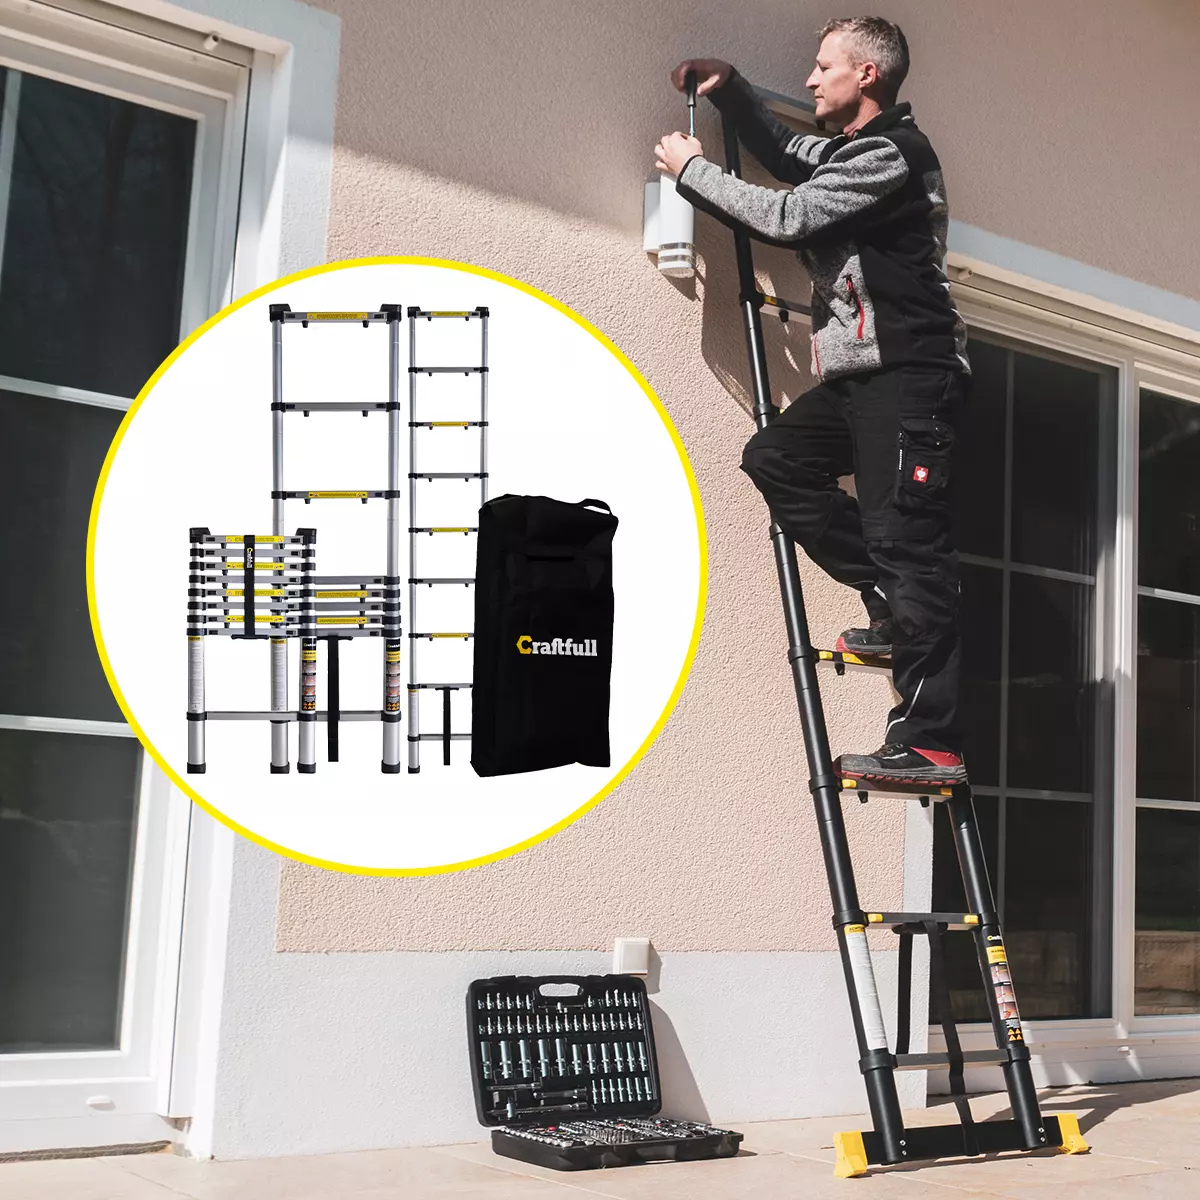 Mann repariert die Lampe an der Hauswand, Leiter in unterschiedlichen Größen